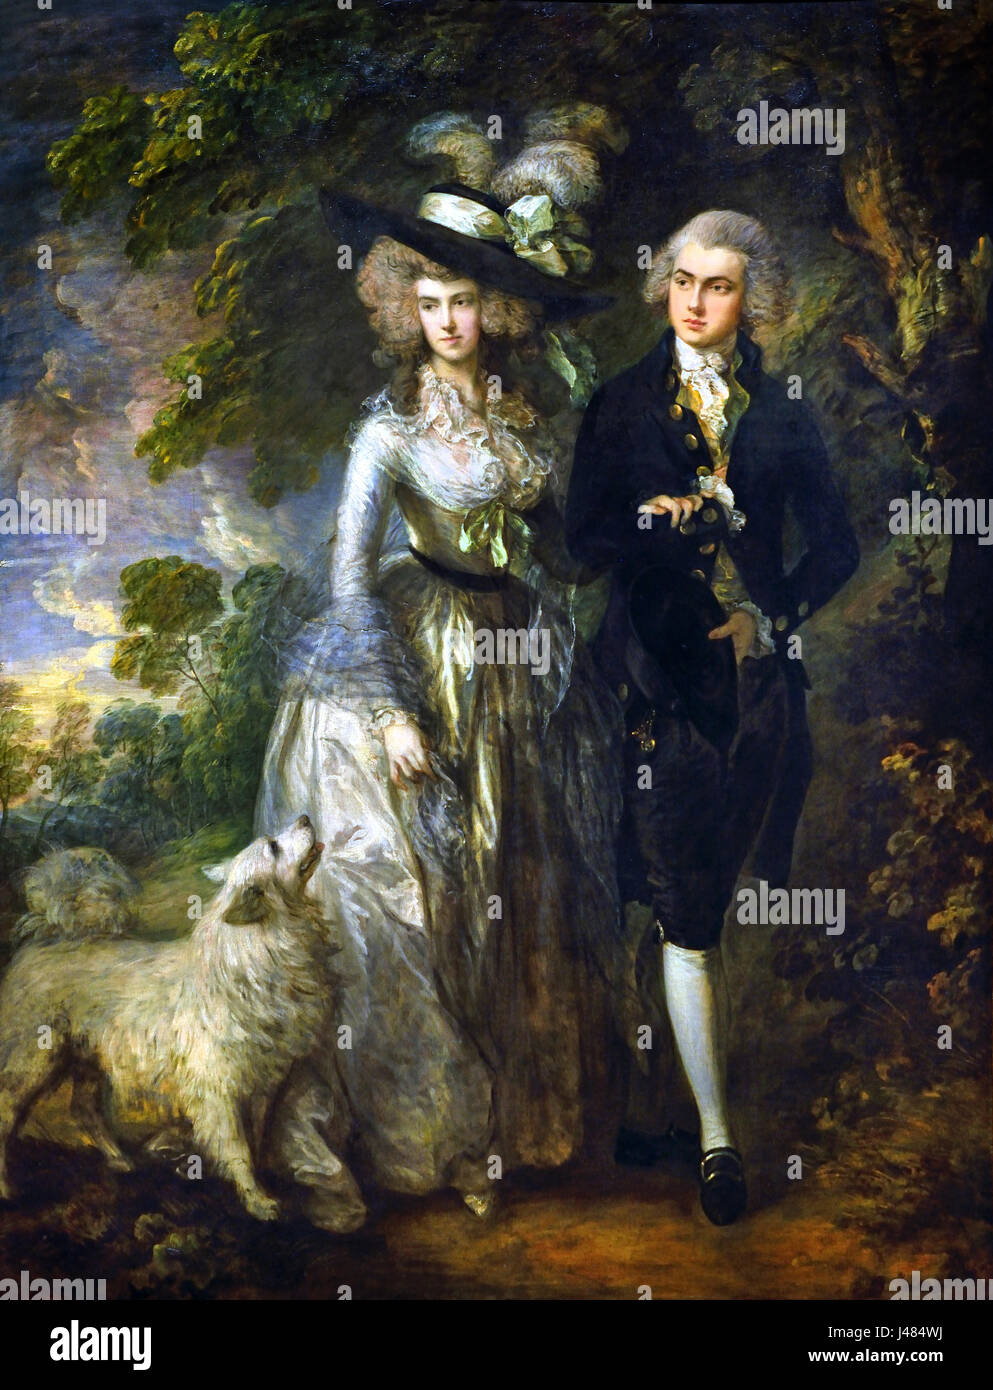 Herr und Frau William Hallett (Morgenspaziergang) 1785 von Thomas Gainsborough-1727-1788-UK-Vereinigtes Königreich-England Englisch britische Großbritannien Stockfoto